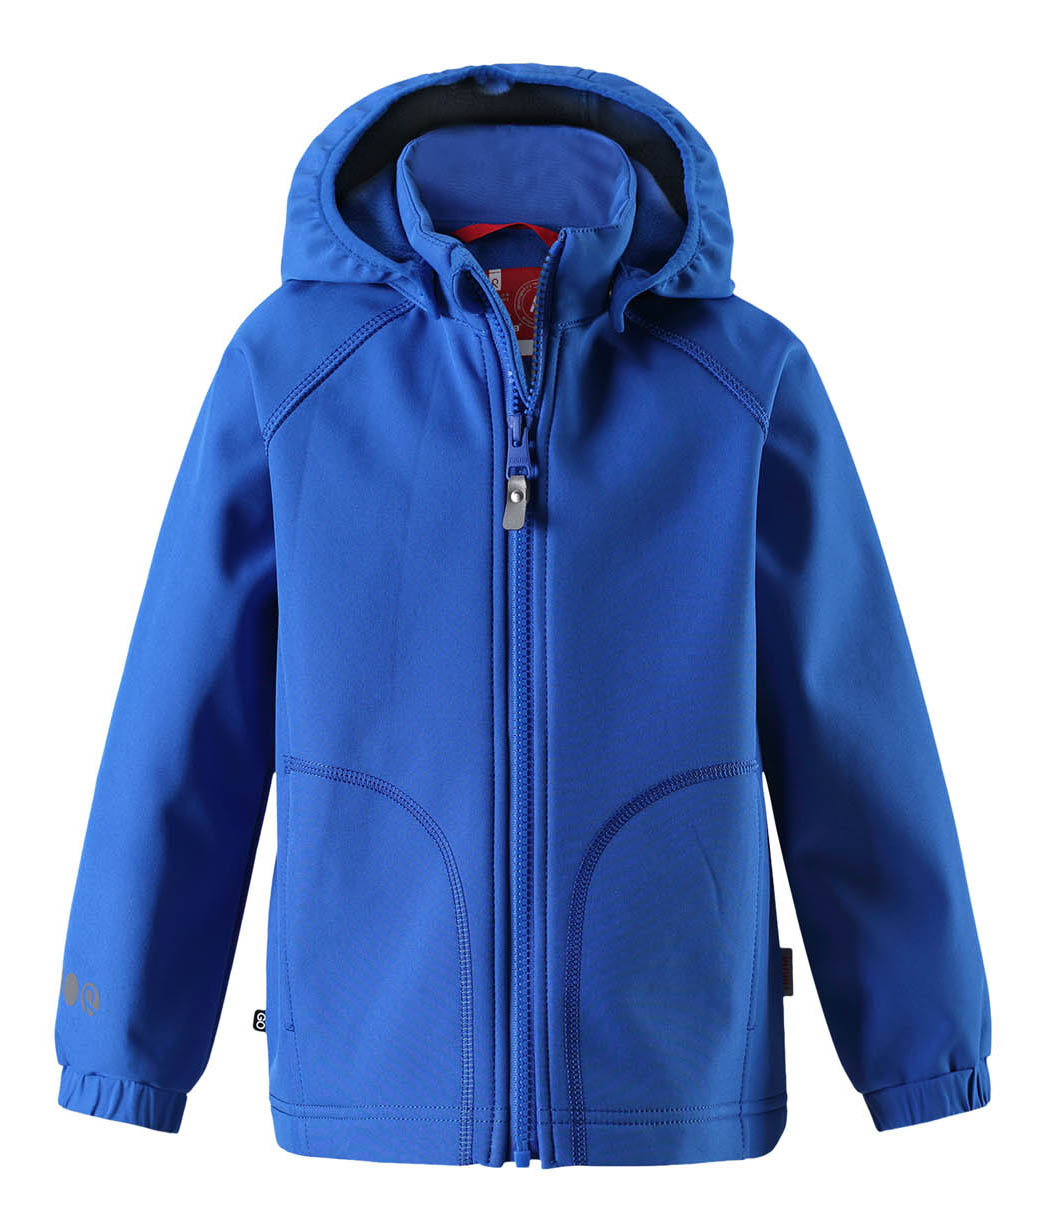 Куртка детская Reima Vantti р.104 синяя 521540-6640 купите недорого в